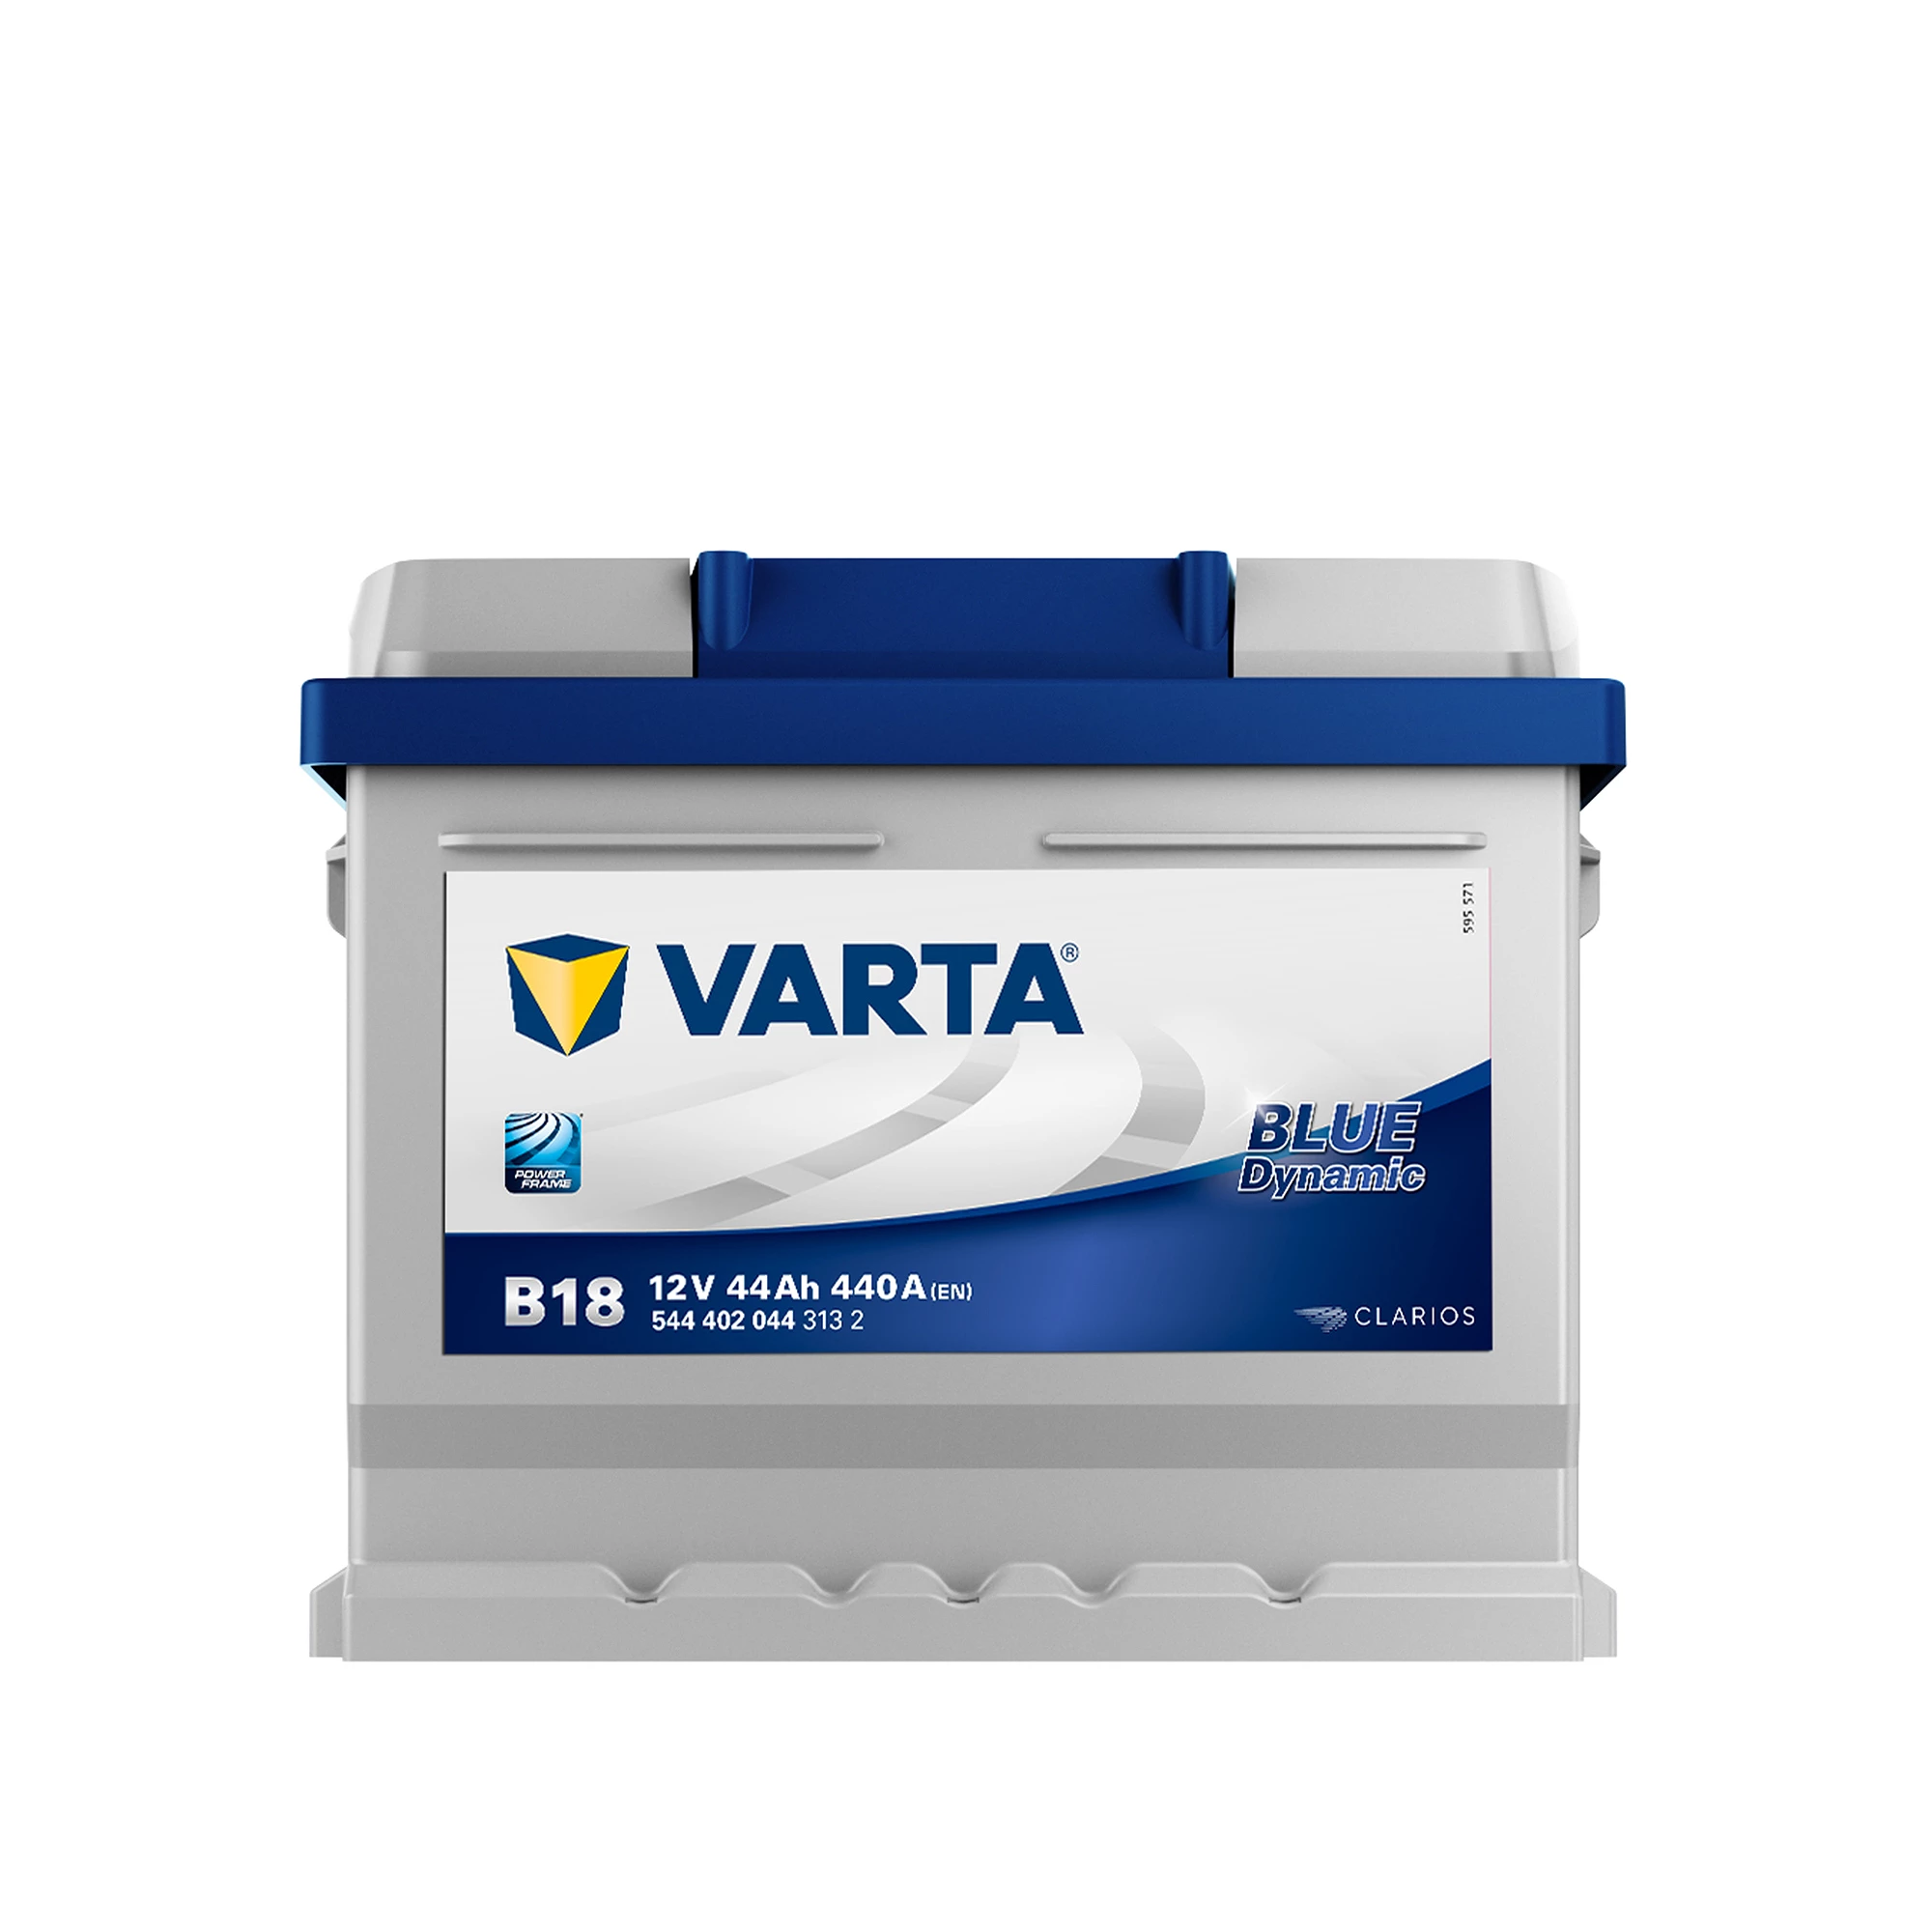 Autobatterie VARTA B18 12V-44Ah-440A TOP! in Dortmund - Höchsten